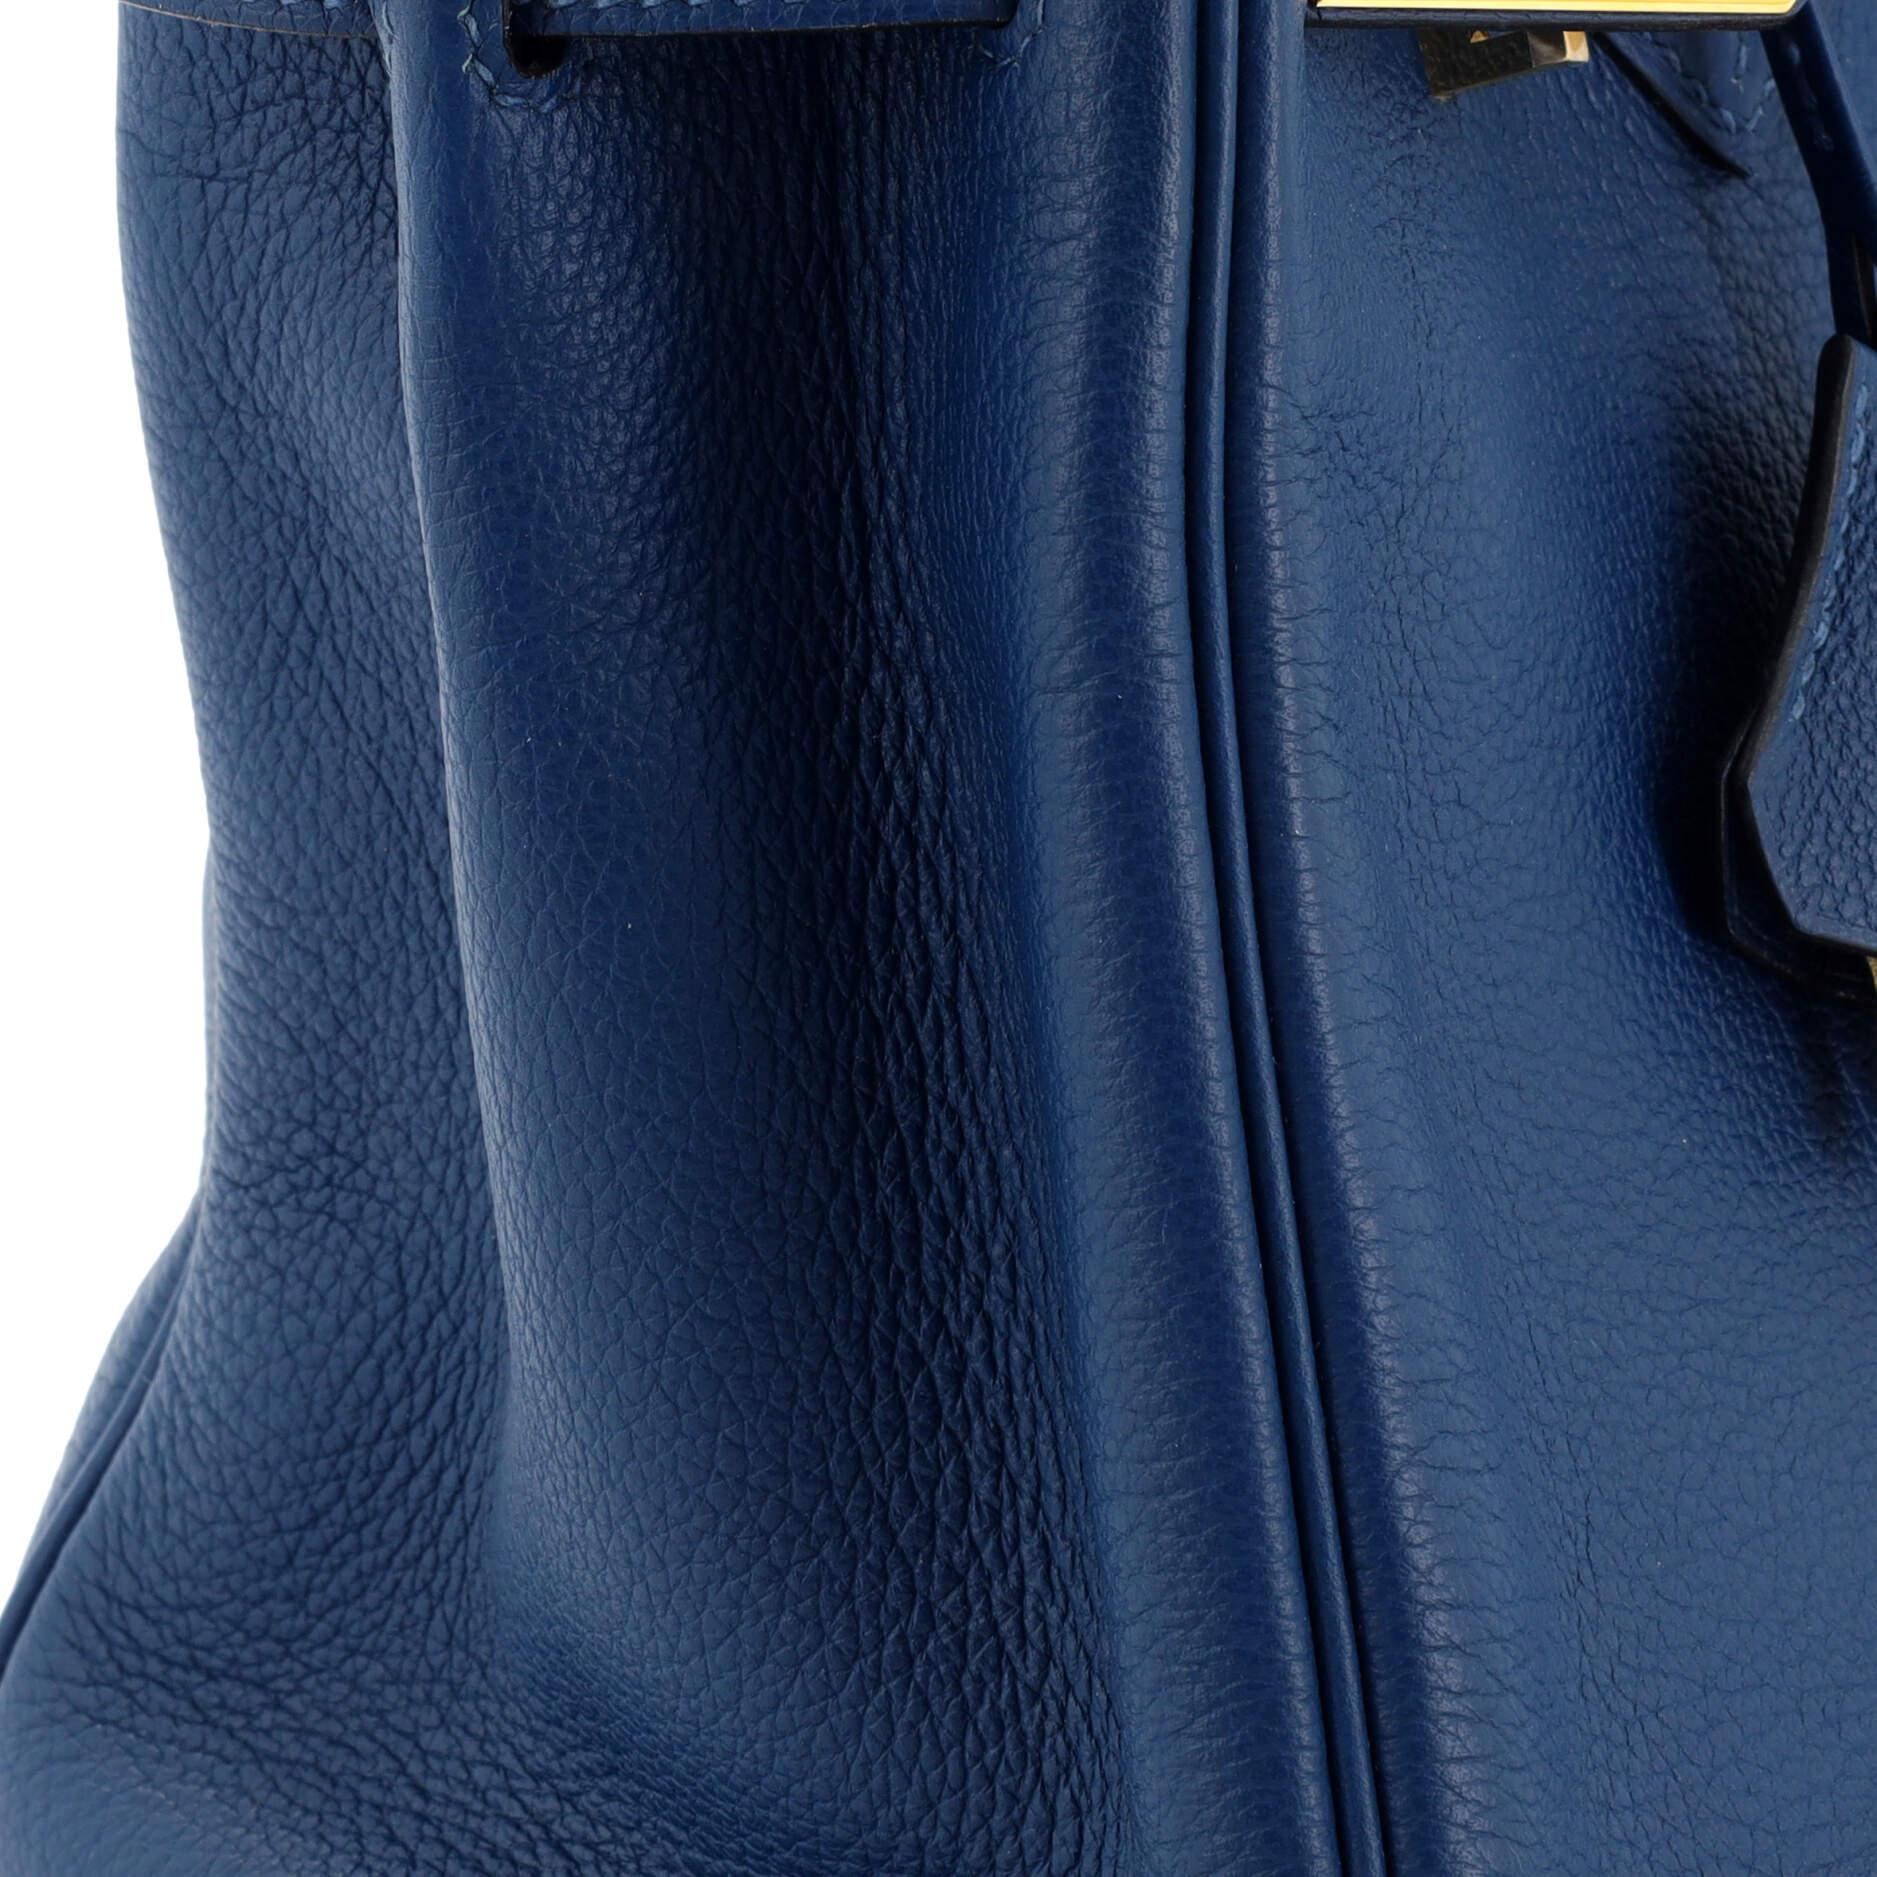 Hermes Birkin Handbag Deep Blue Novillo with Gold Hardware 30 For Sale 3